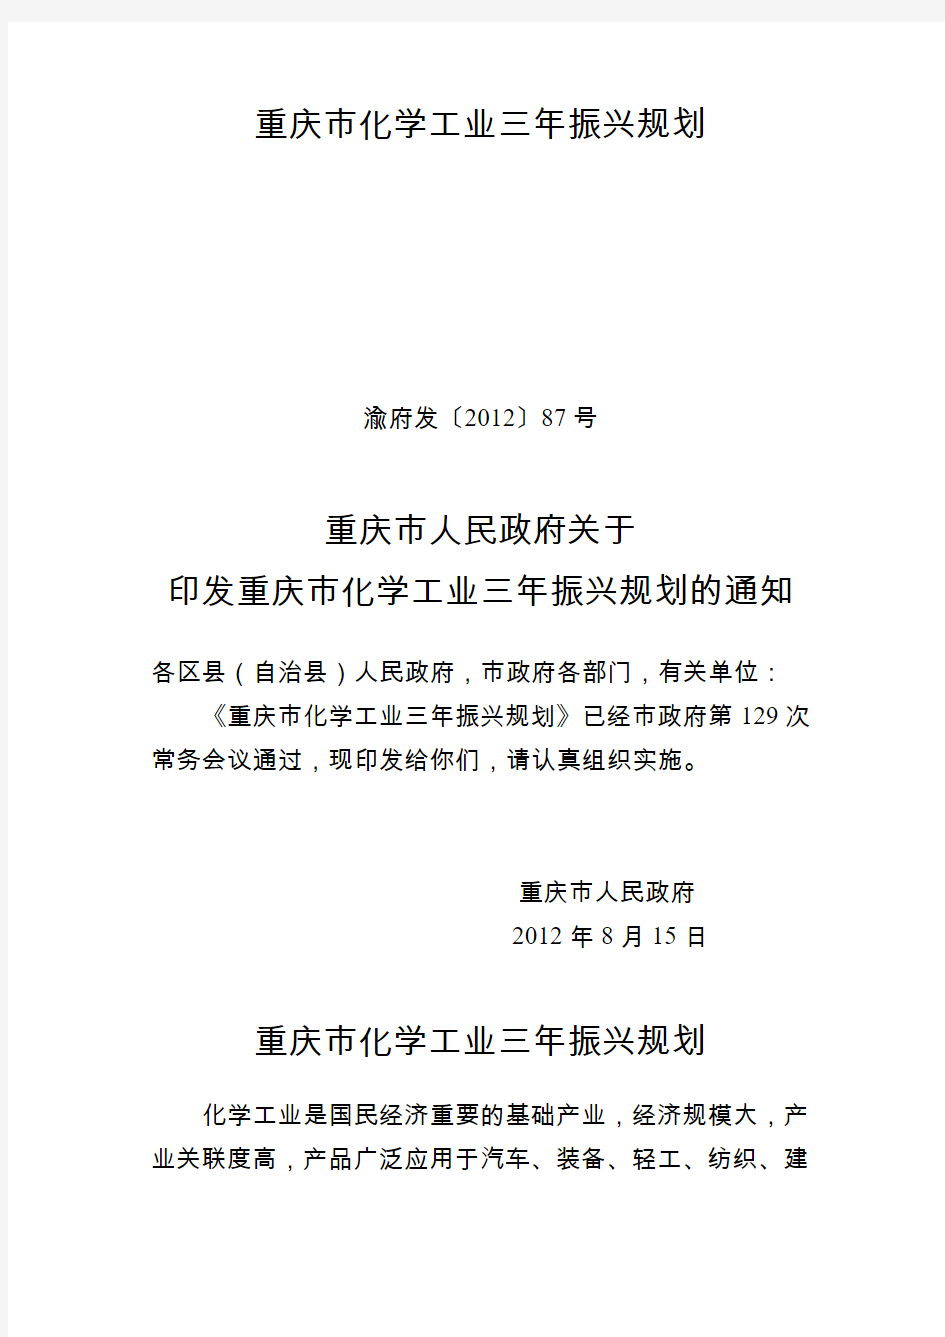 重庆市化学工业三年振兴规划